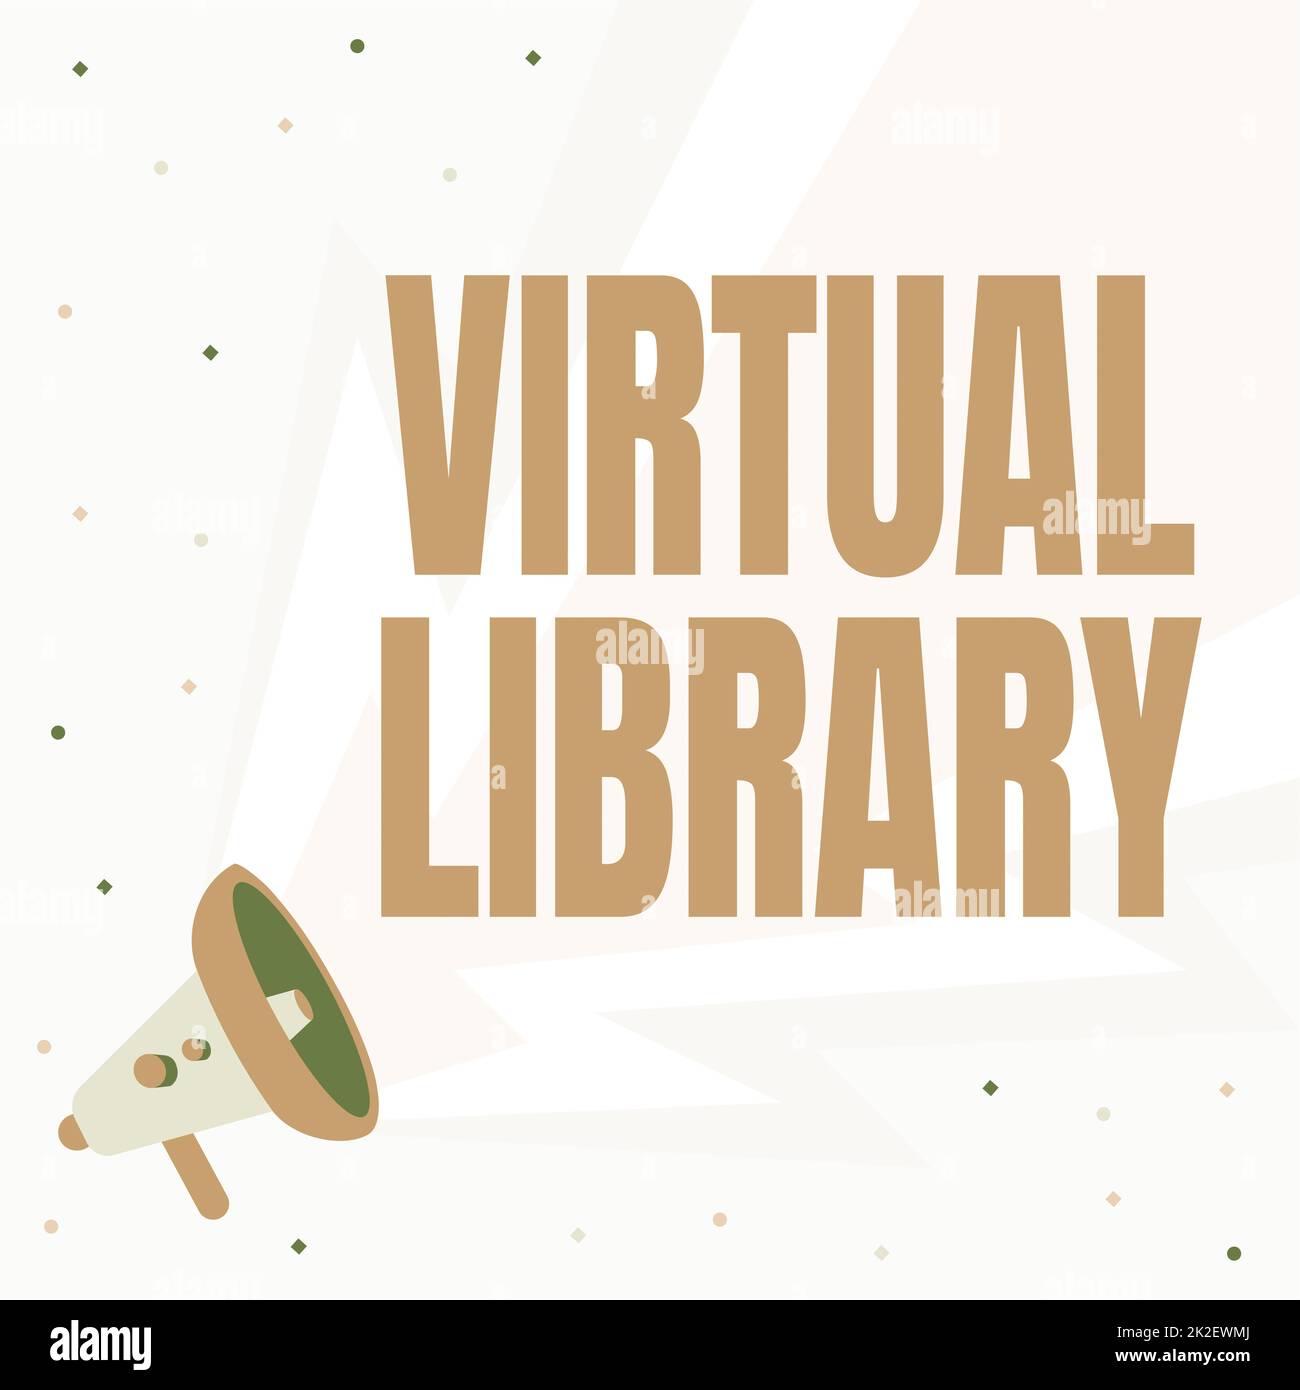 Textschild mit der Anzeige der virtuellen Bibliothek. Geschäftsidee Virtuelle Bibliothek Megaphone-Zeichnung mit Blitzwellengeräusch, der laute Ankündigung macht. Stockfoto